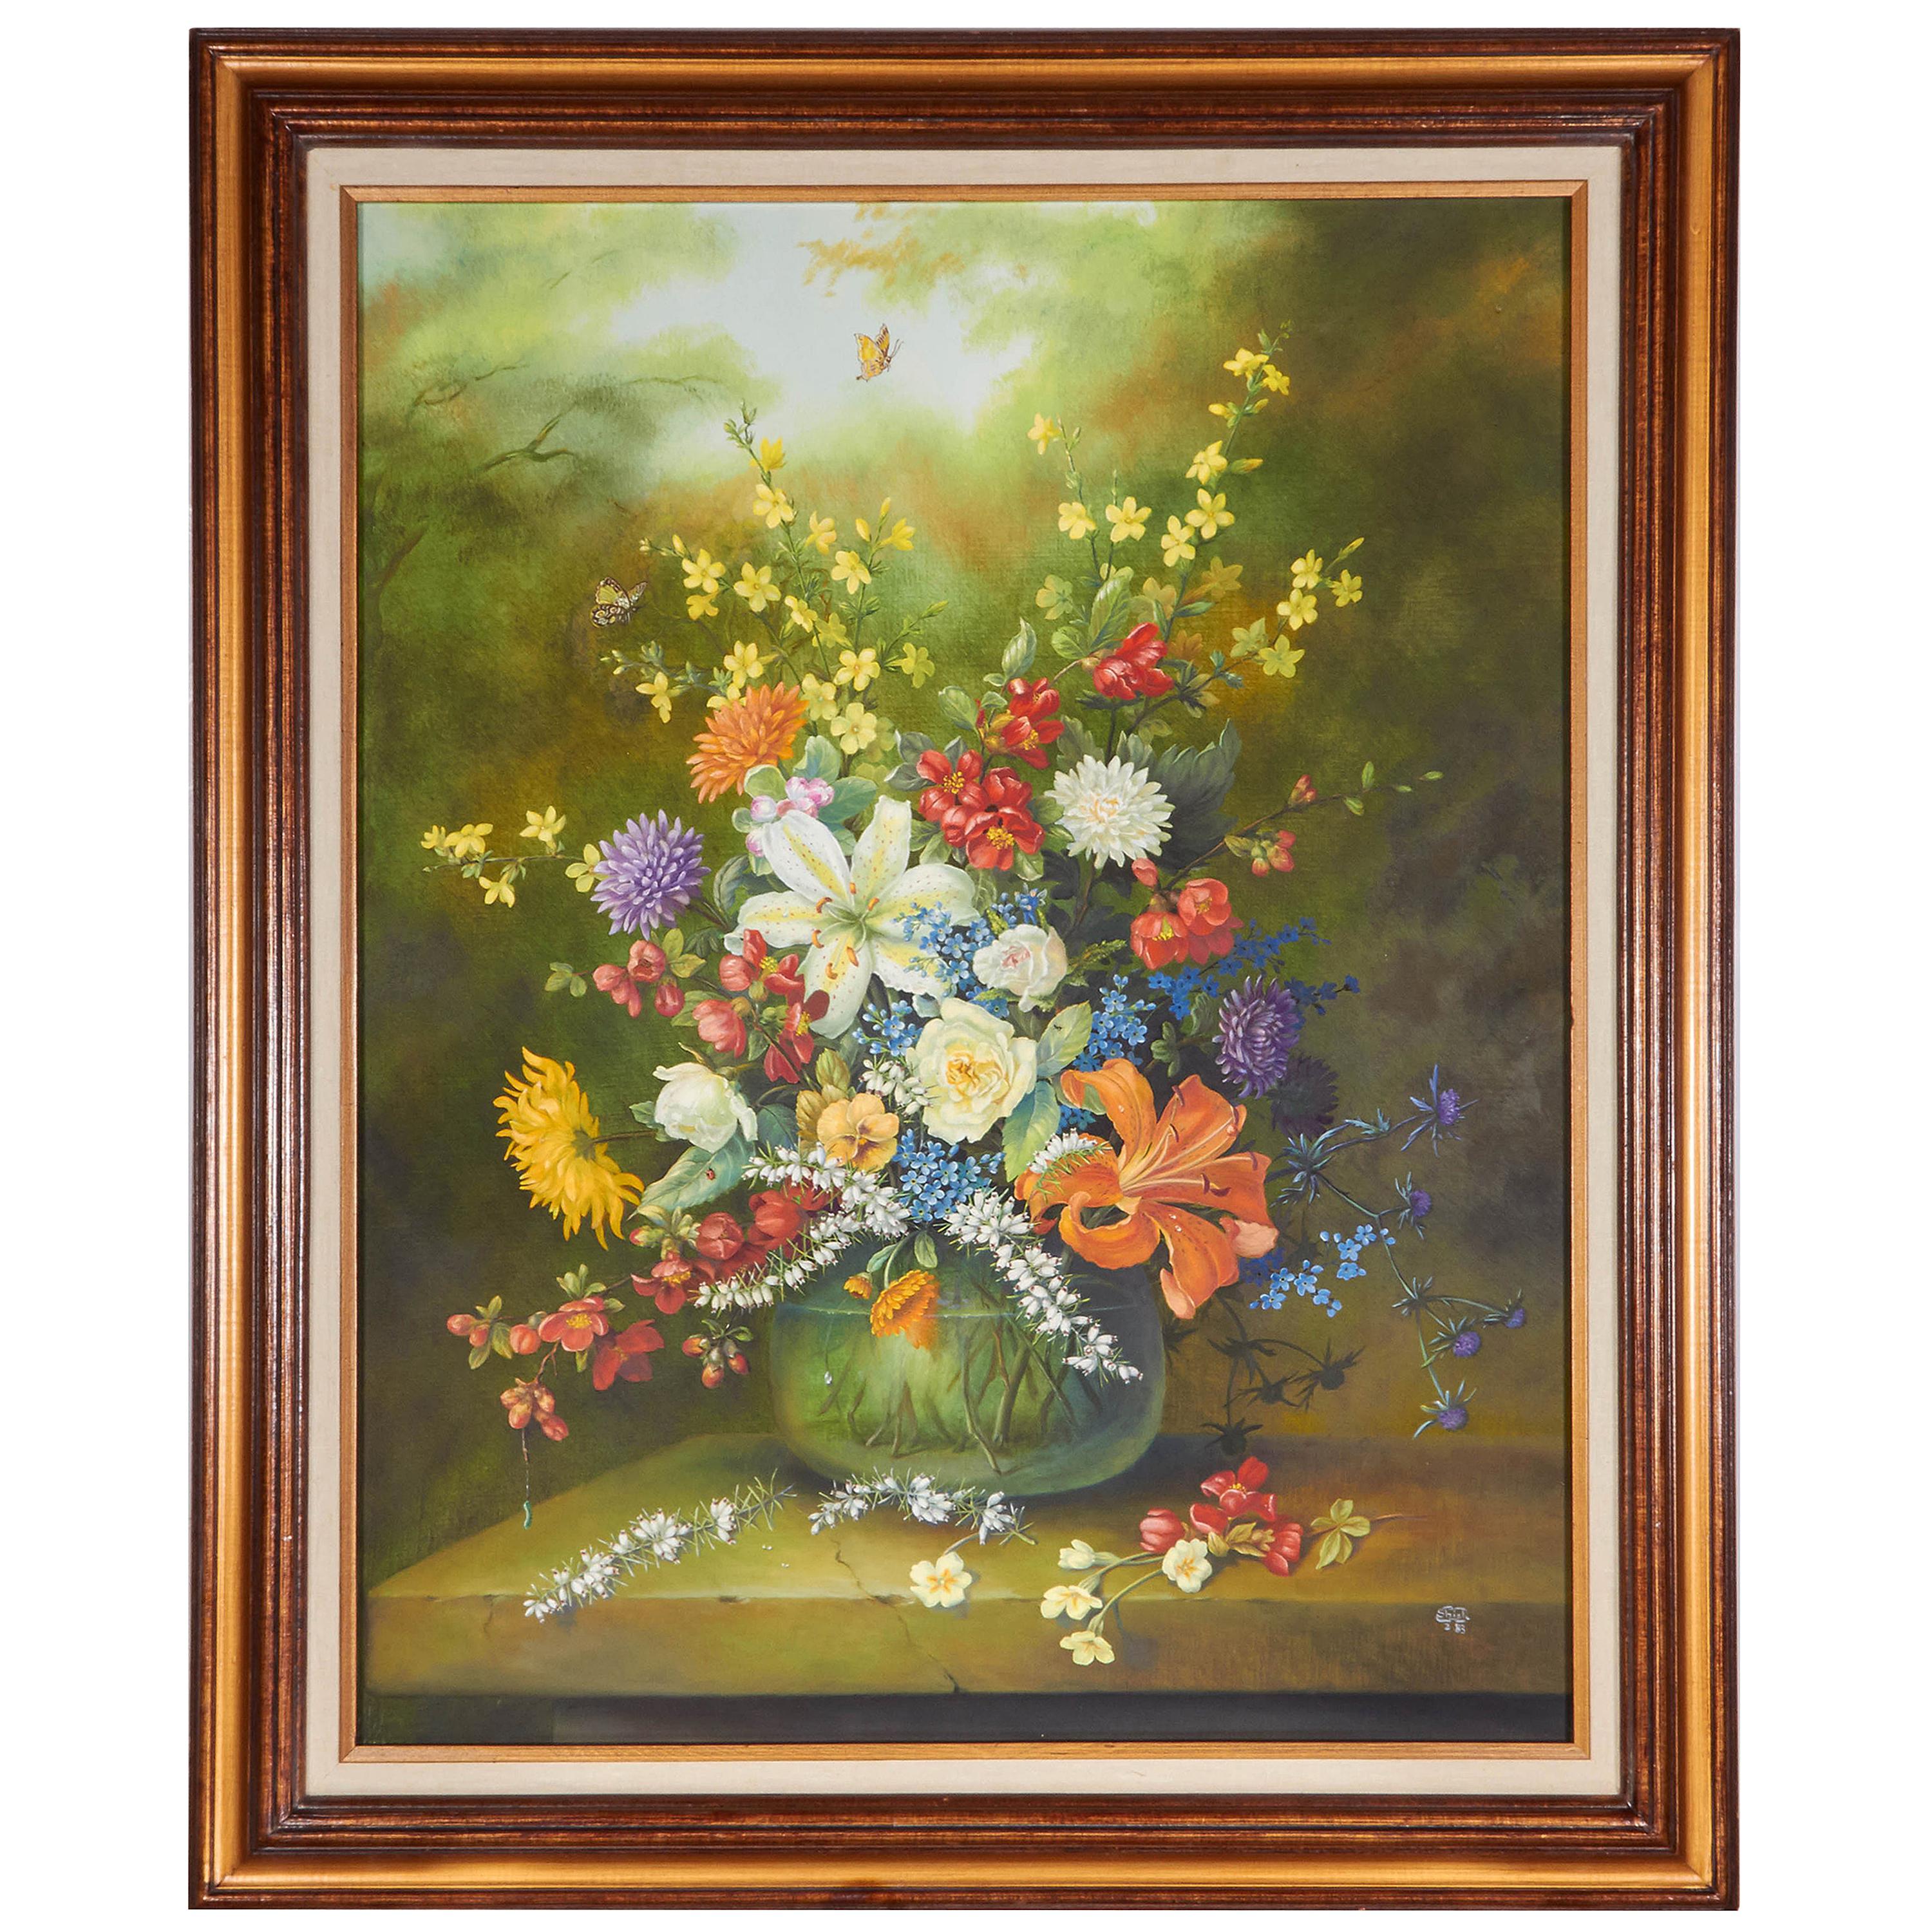 Floral Still Life Painting by Ethelwyn Shiel